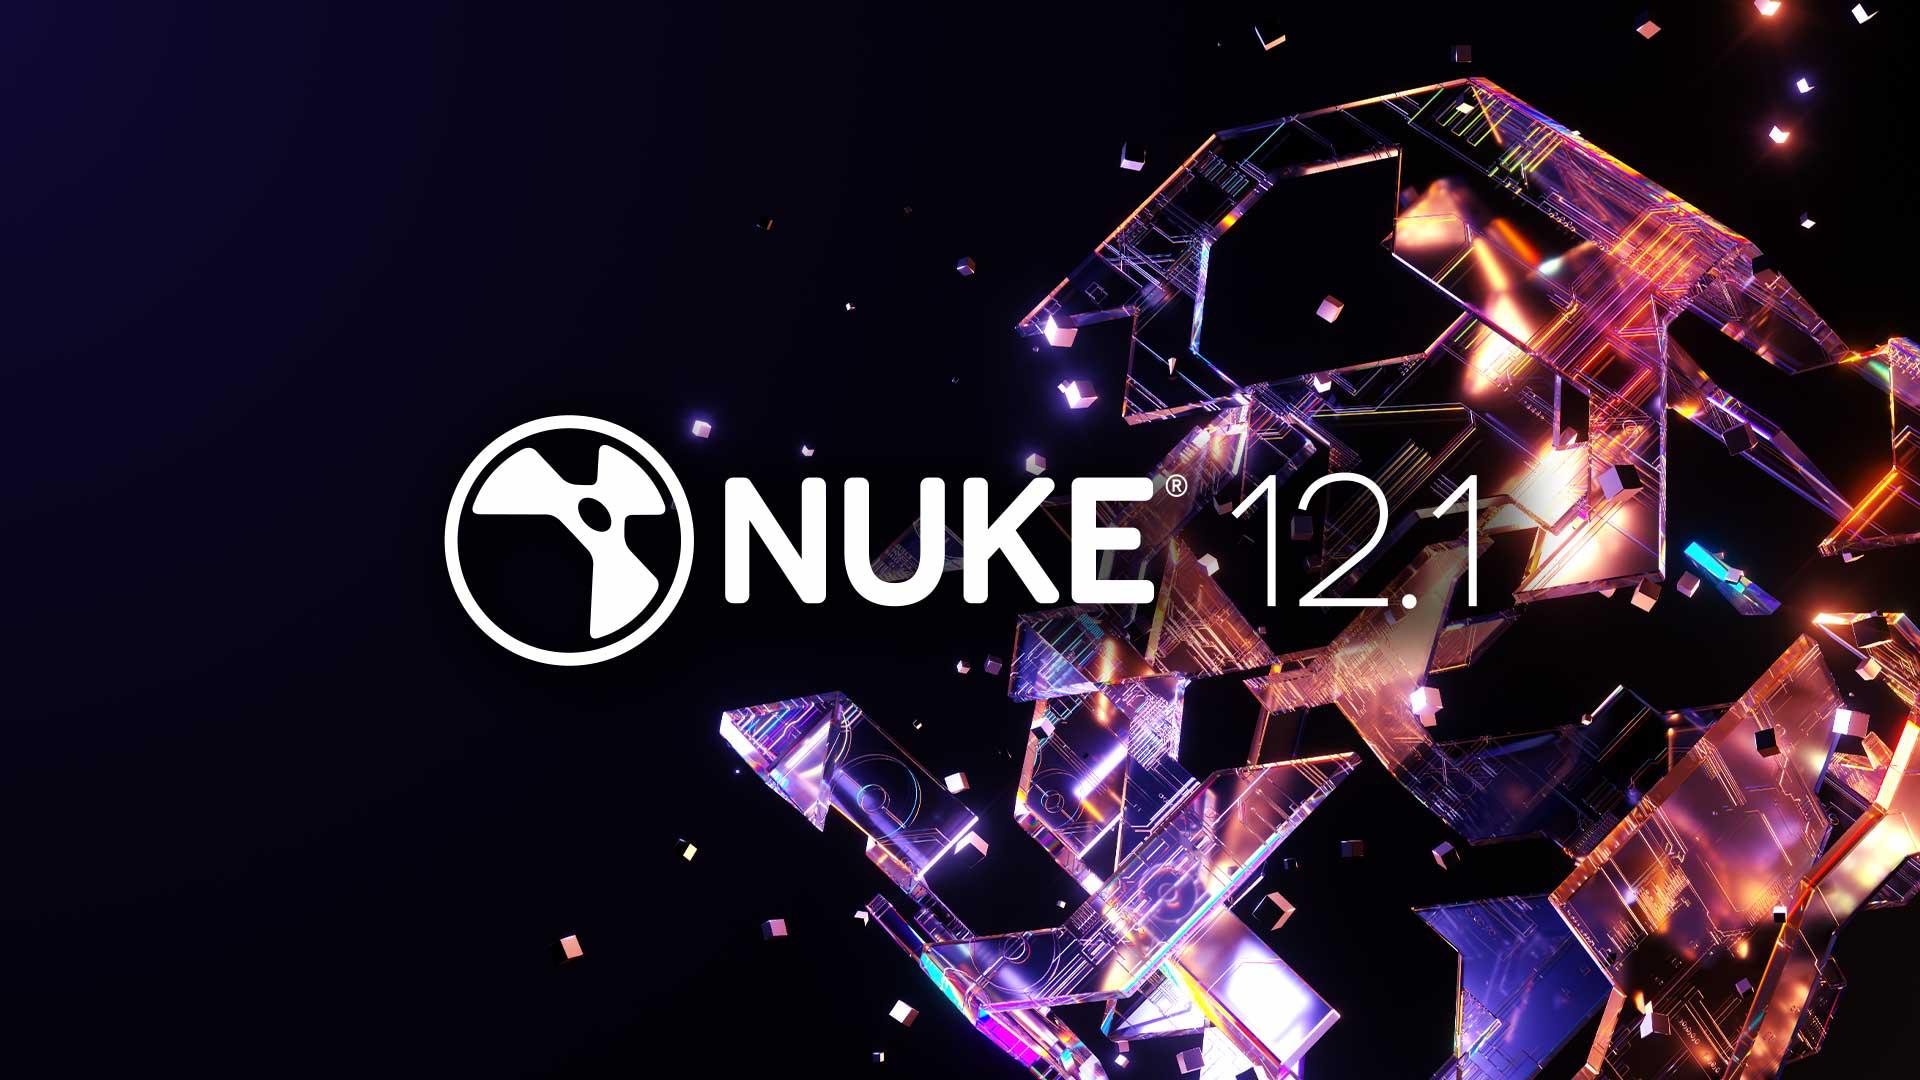 Nuke 12.1